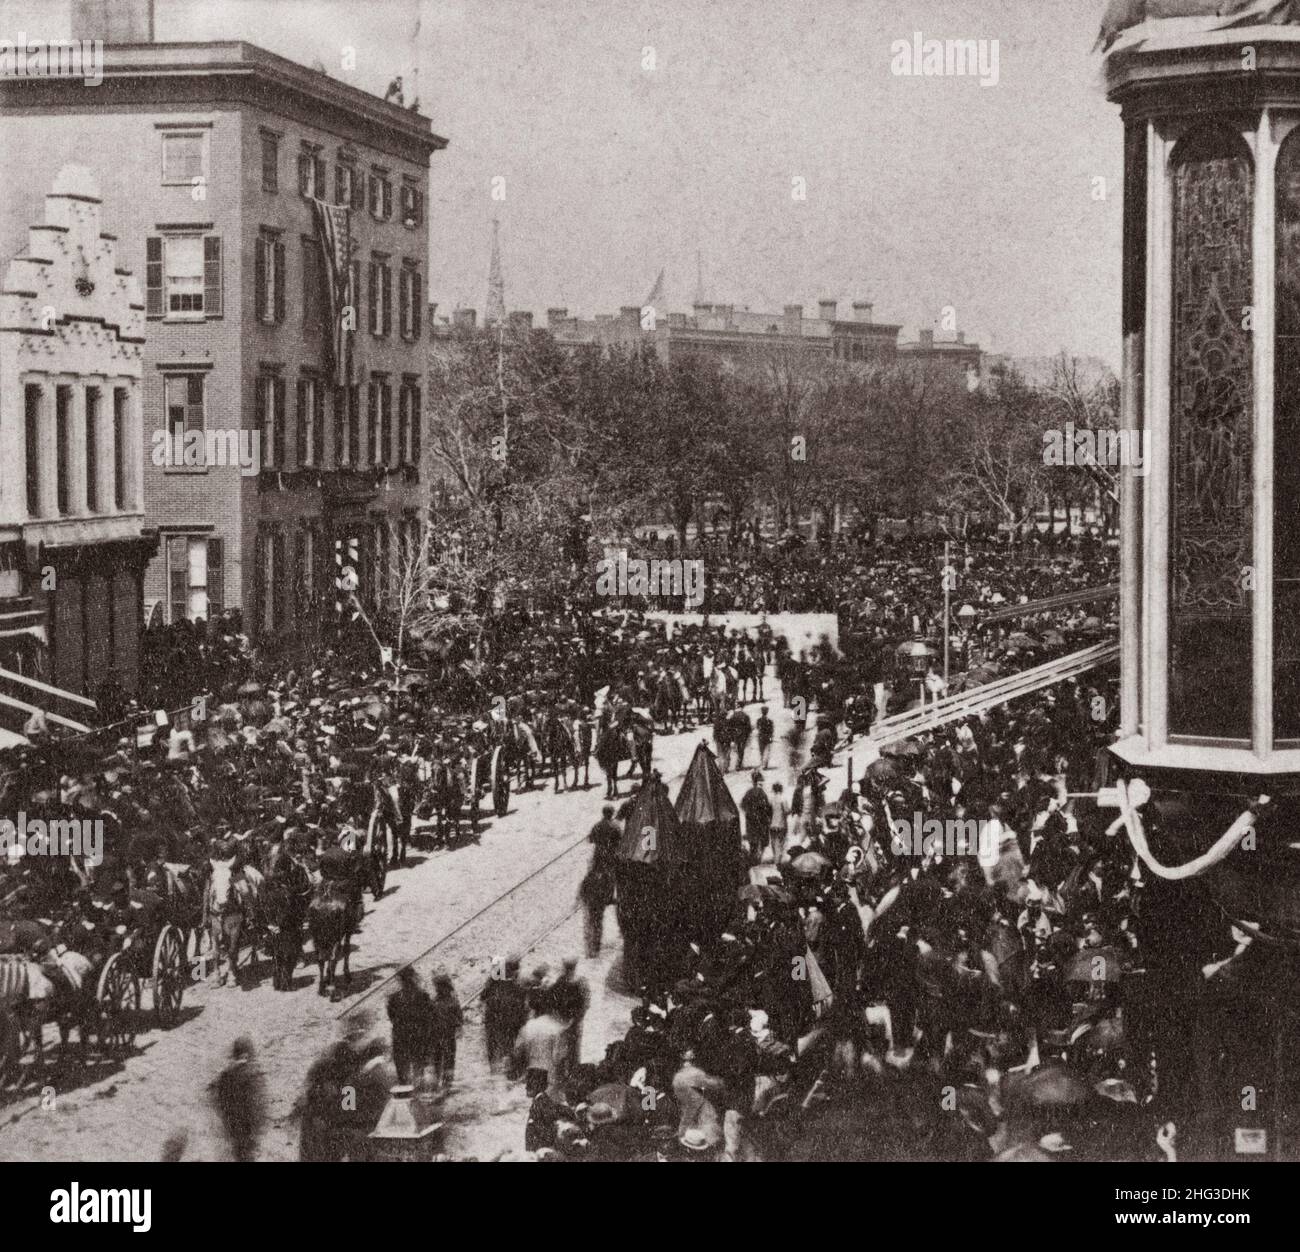 Foto vintage de Union Square, funeral de Lincoln. EE.UU. 1865 La foto muestra la vista de los carruajes tirados por caballos en la procesión funeraria de Lincoln en Broadway Foto de stock